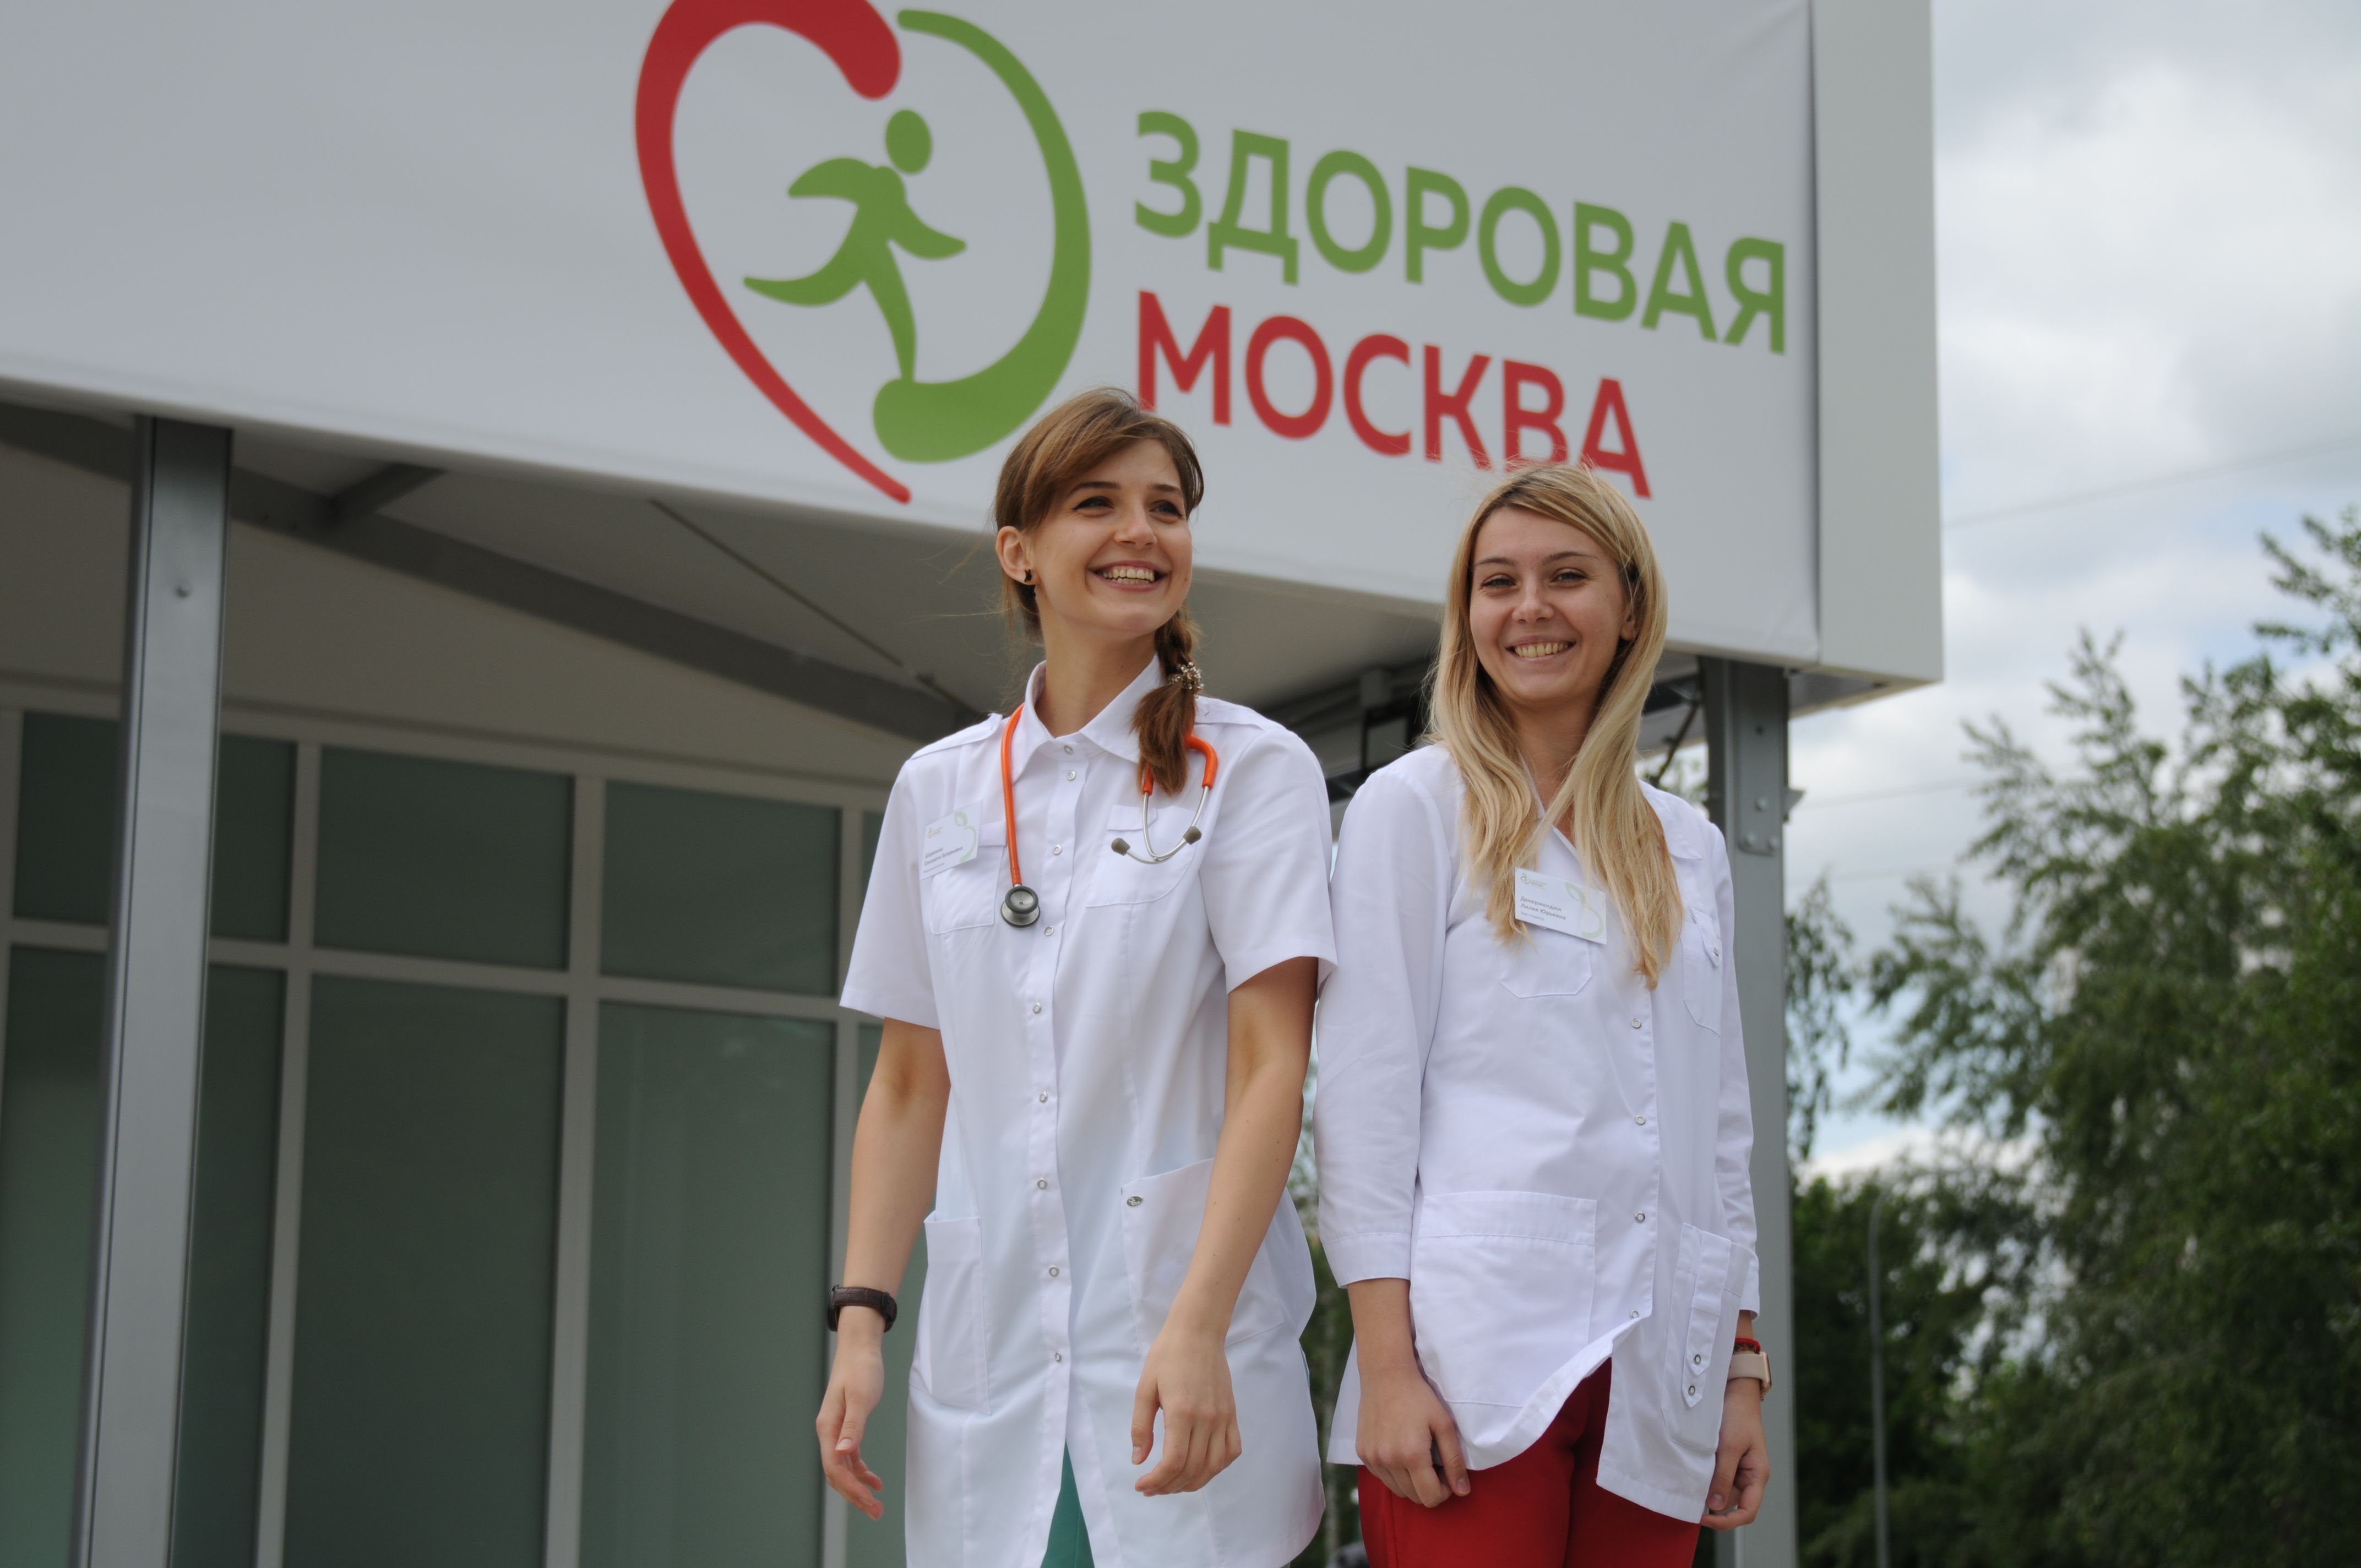 Передвижные флюорографы расположены рядом с павильонами «Здоровая Москва». Фото: Светлана Колоскова